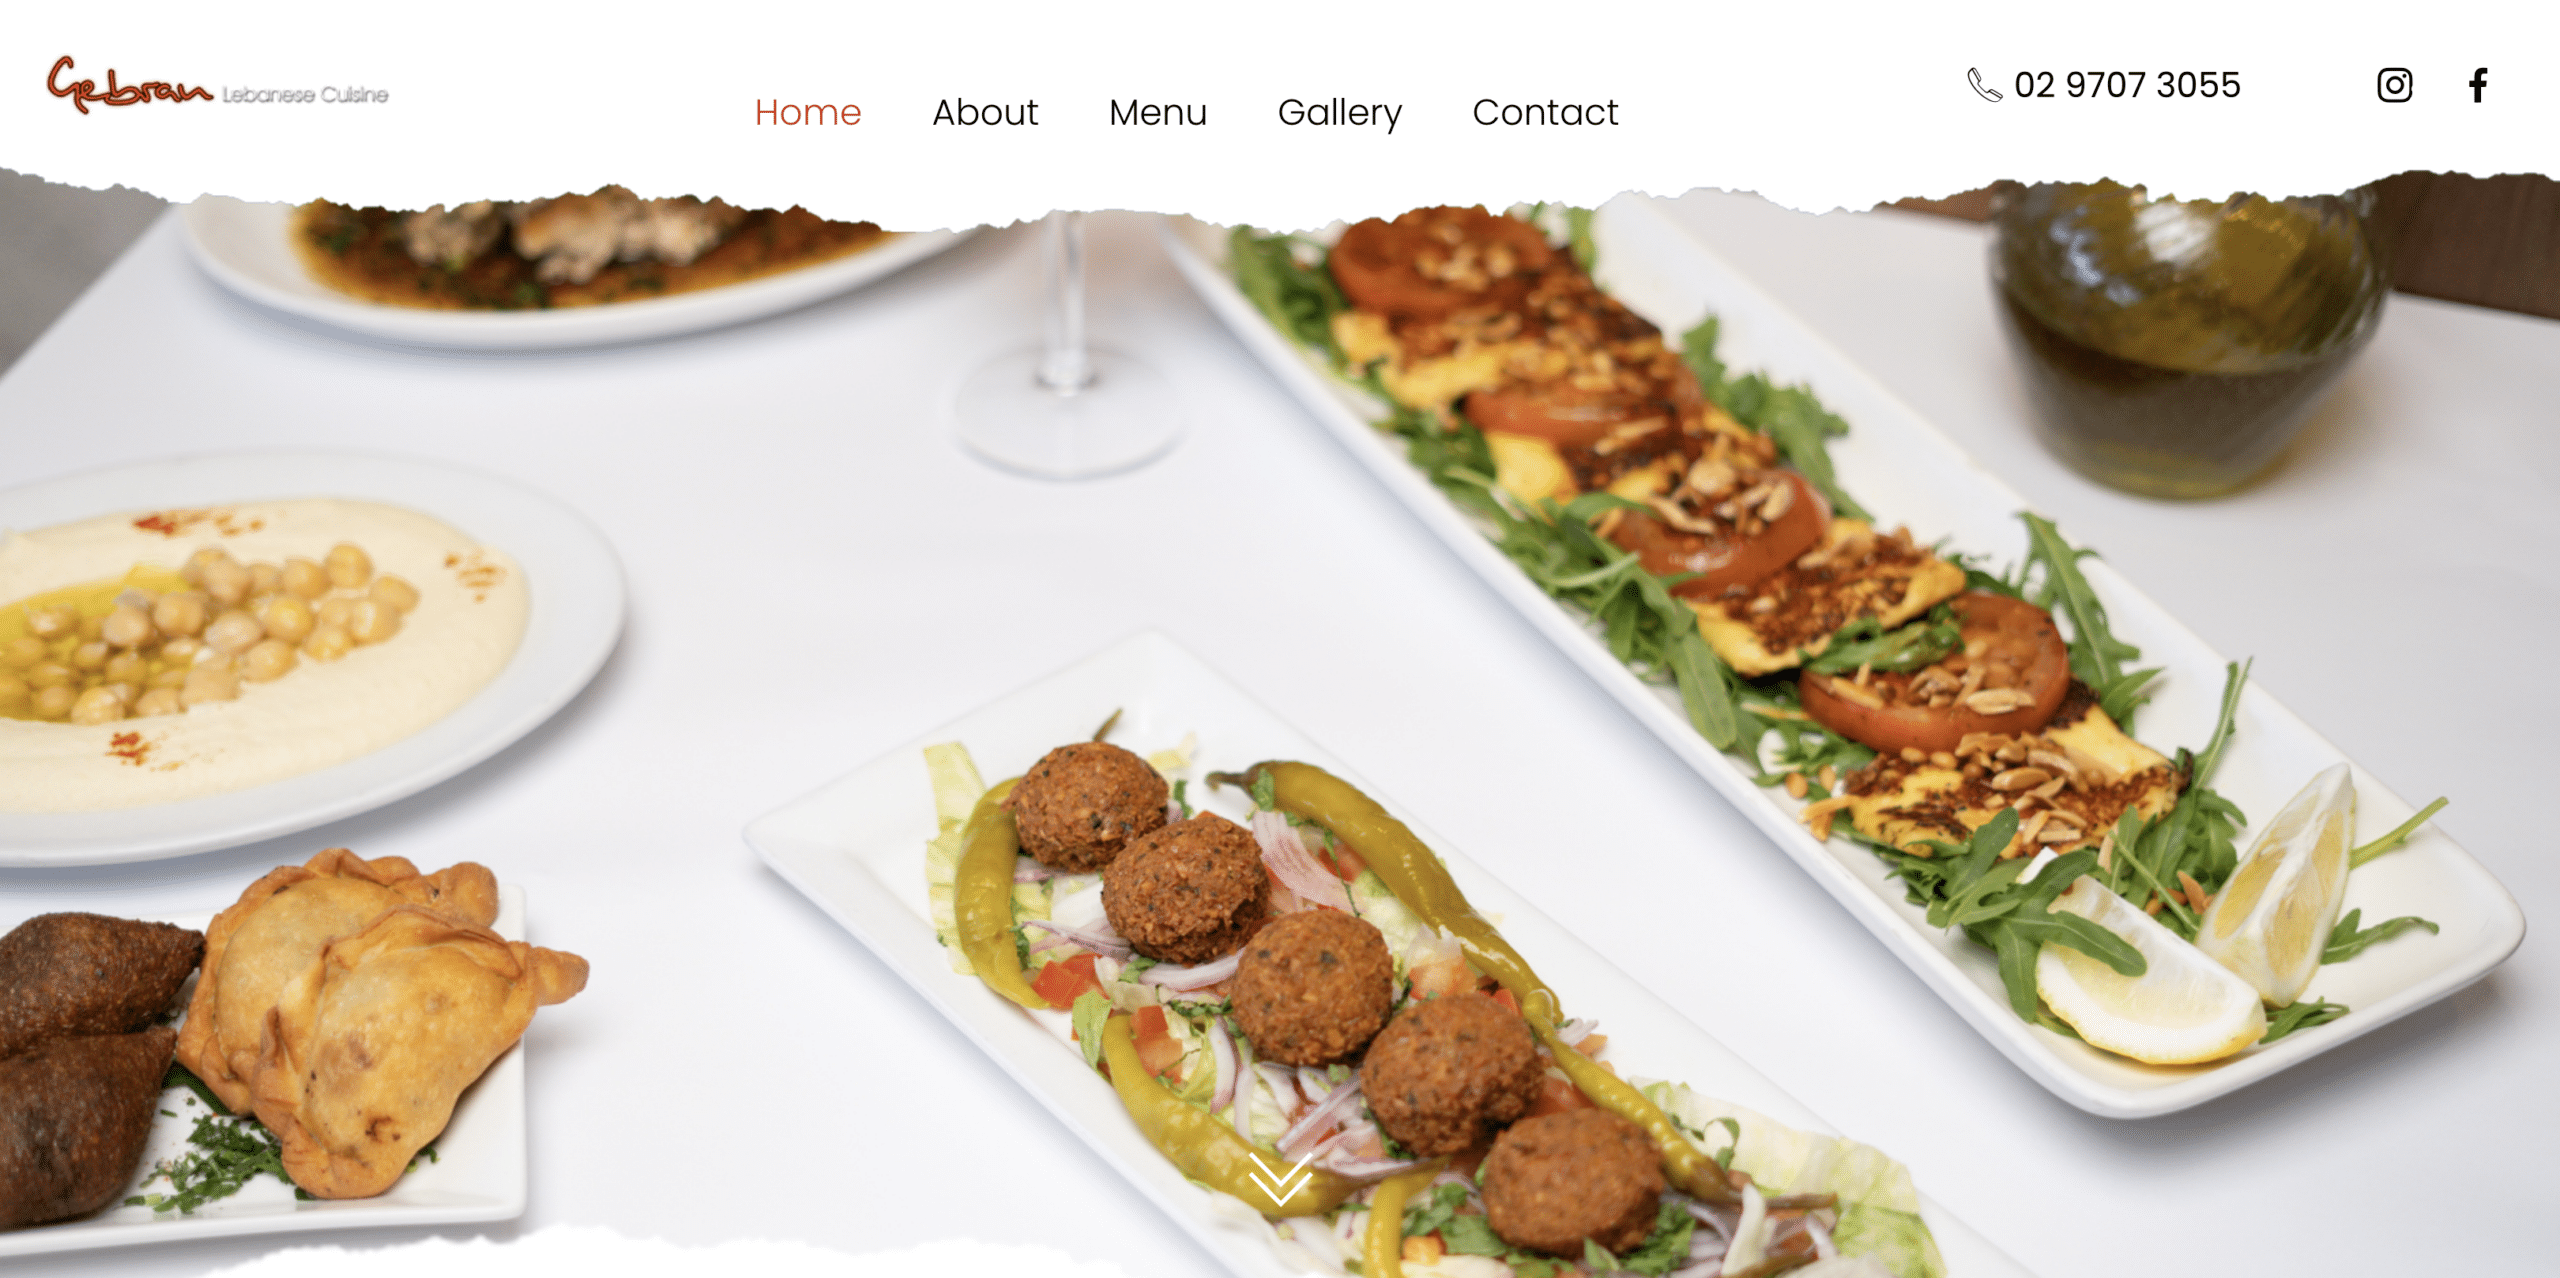 Restaurant/Cafe Website